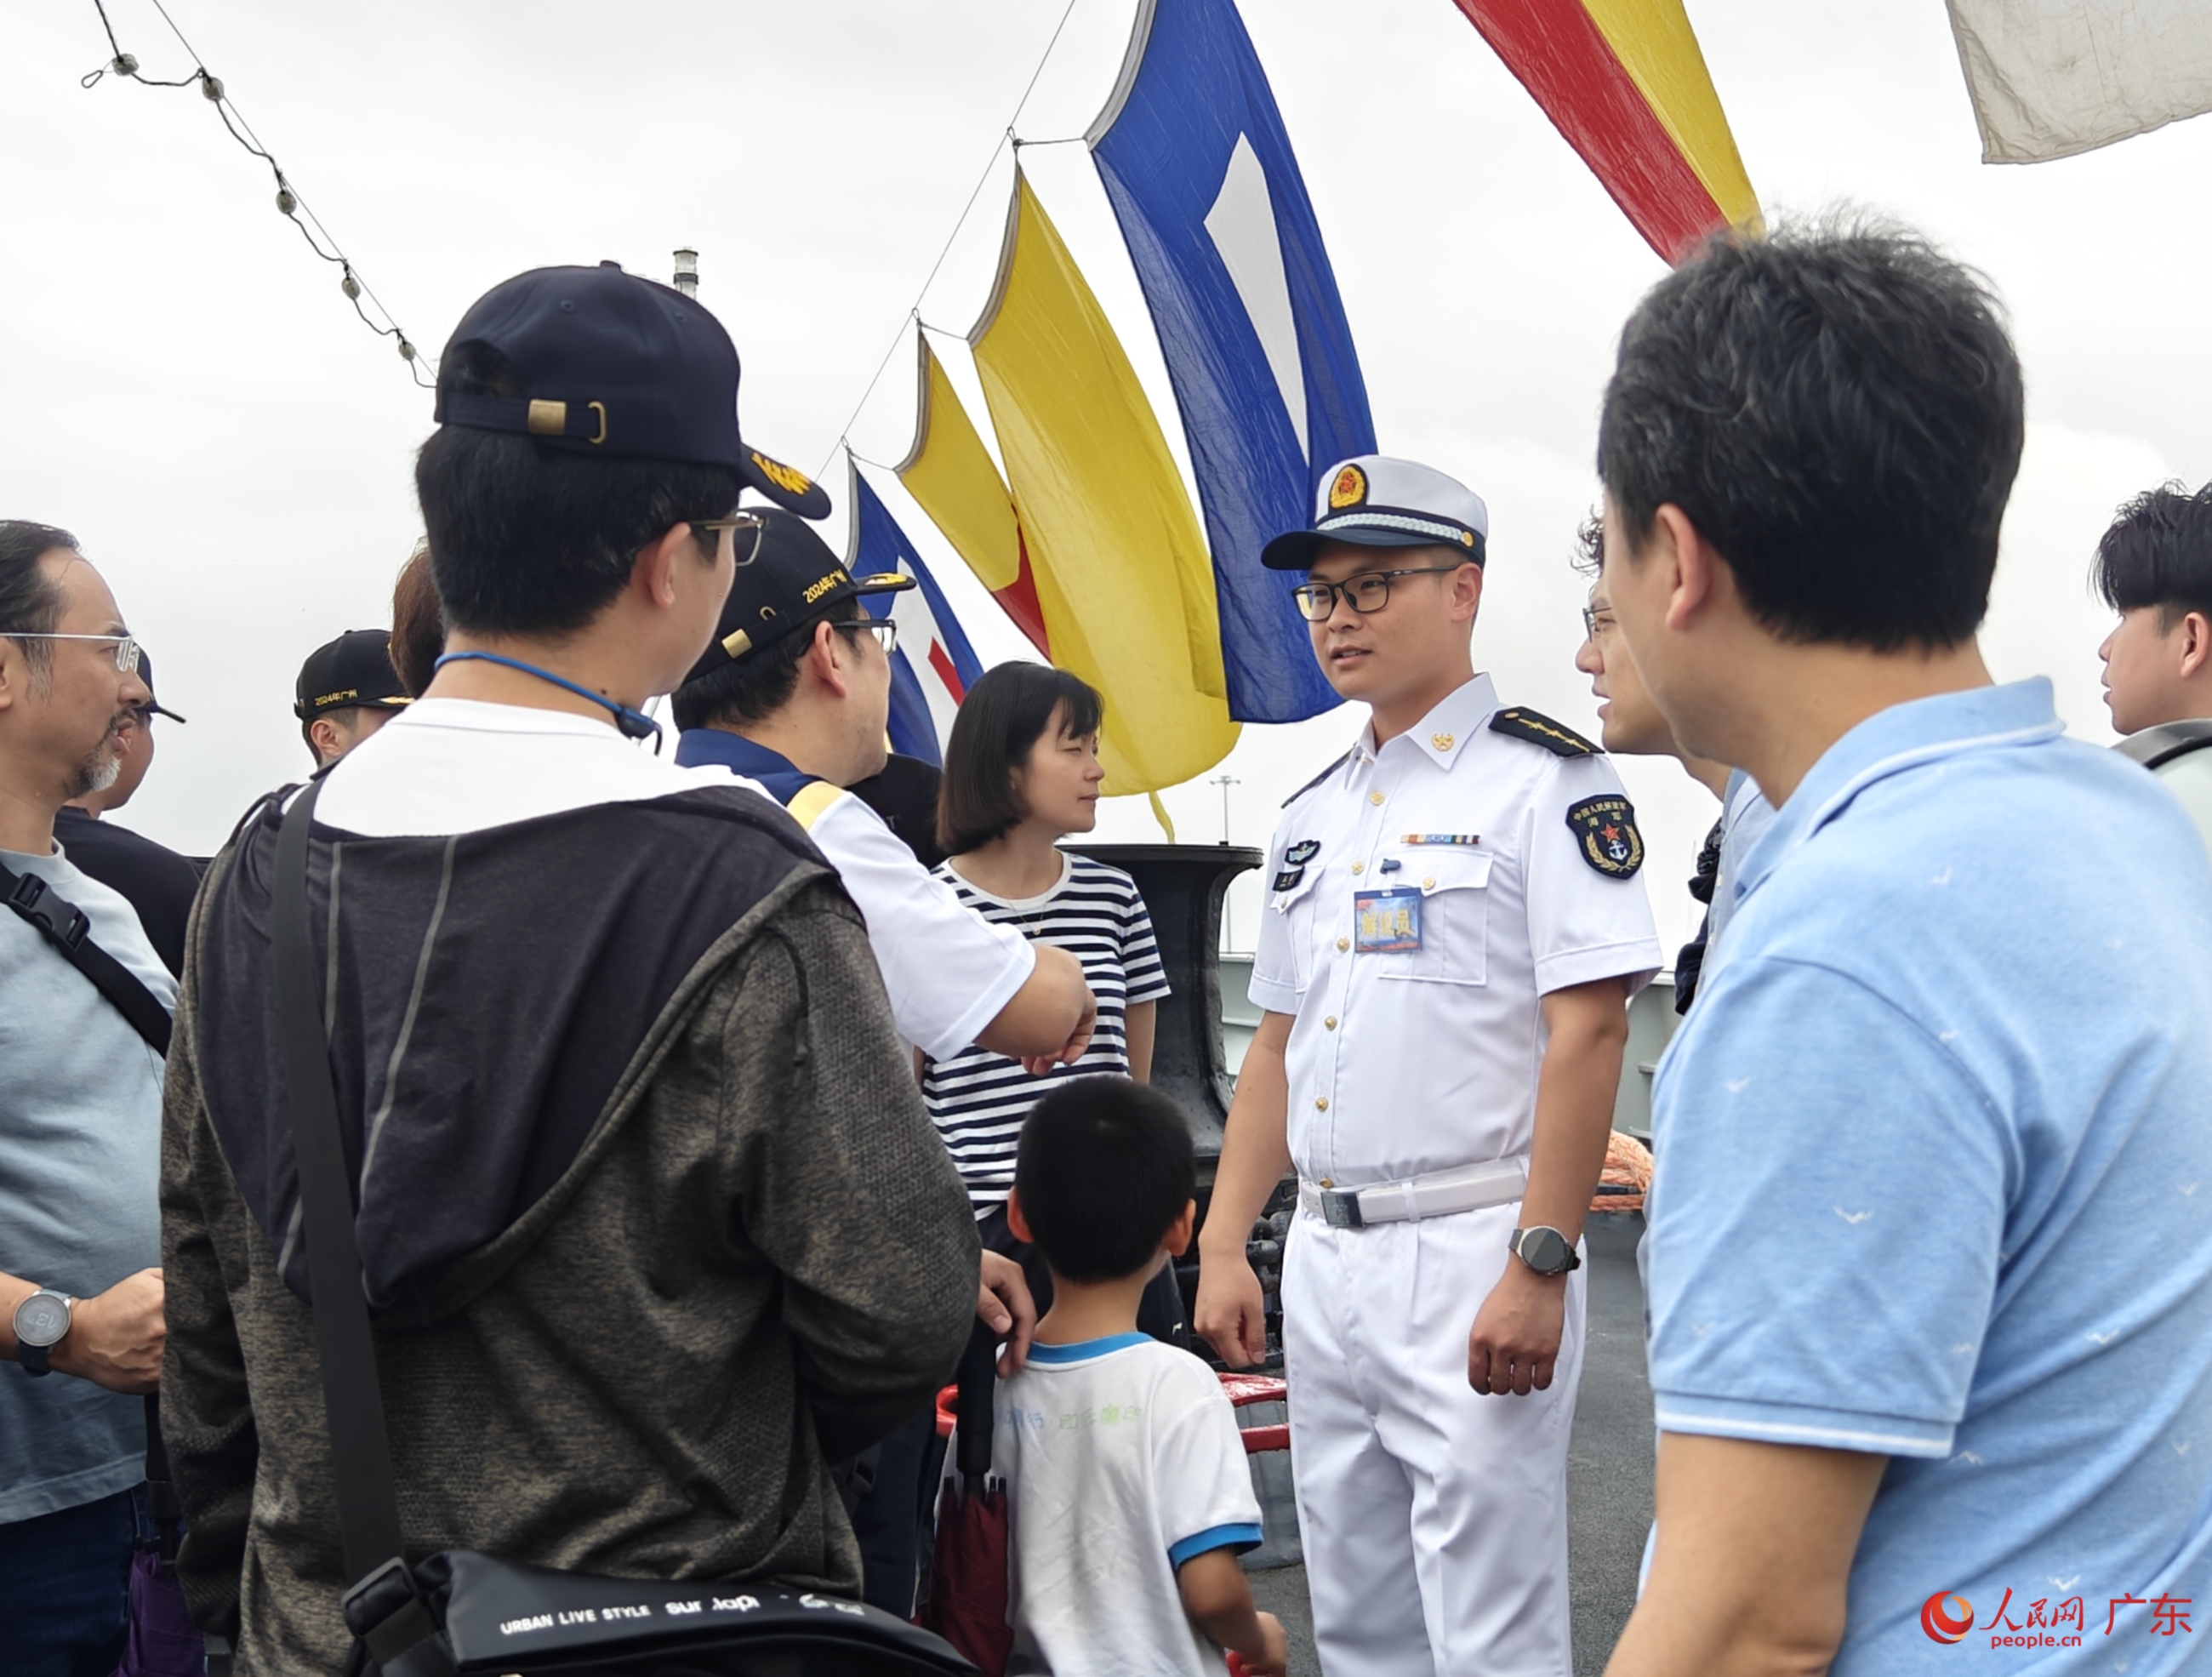 慶祝人民海軍成立75周年 “廣州艦回家鄉”活動舉行